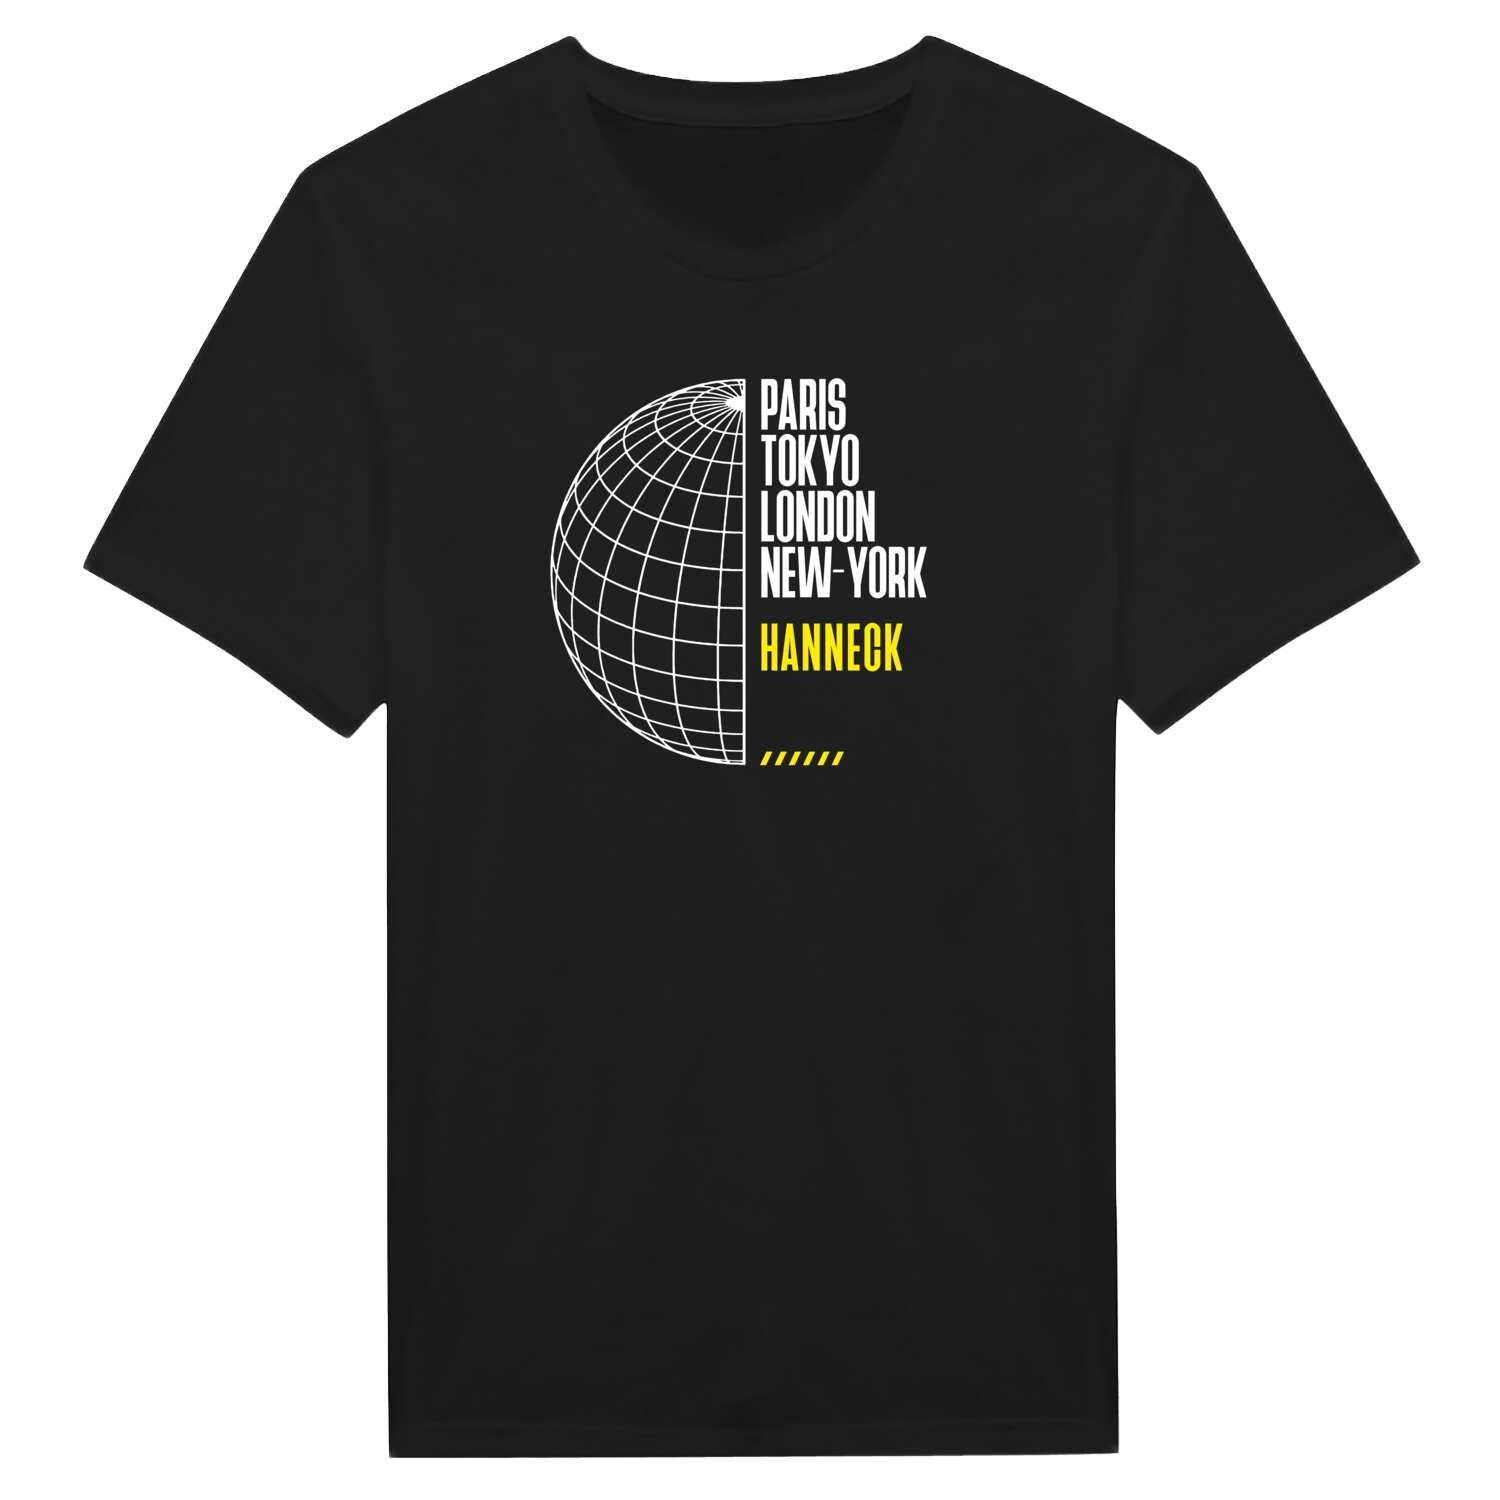 Hanneck T-Shirt »Paris Tokyo London«